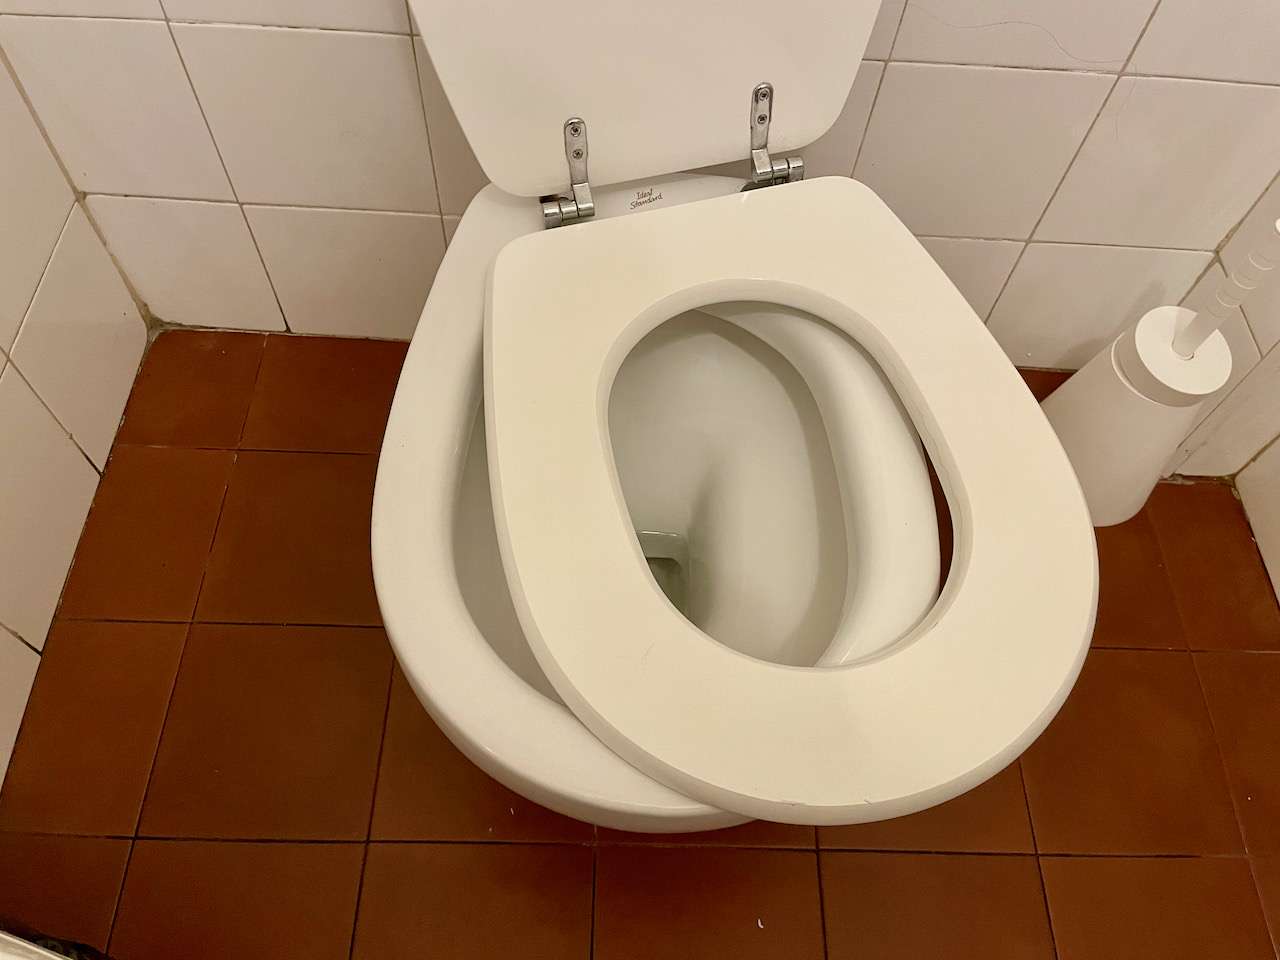 Broken Toilet Seat in Italy